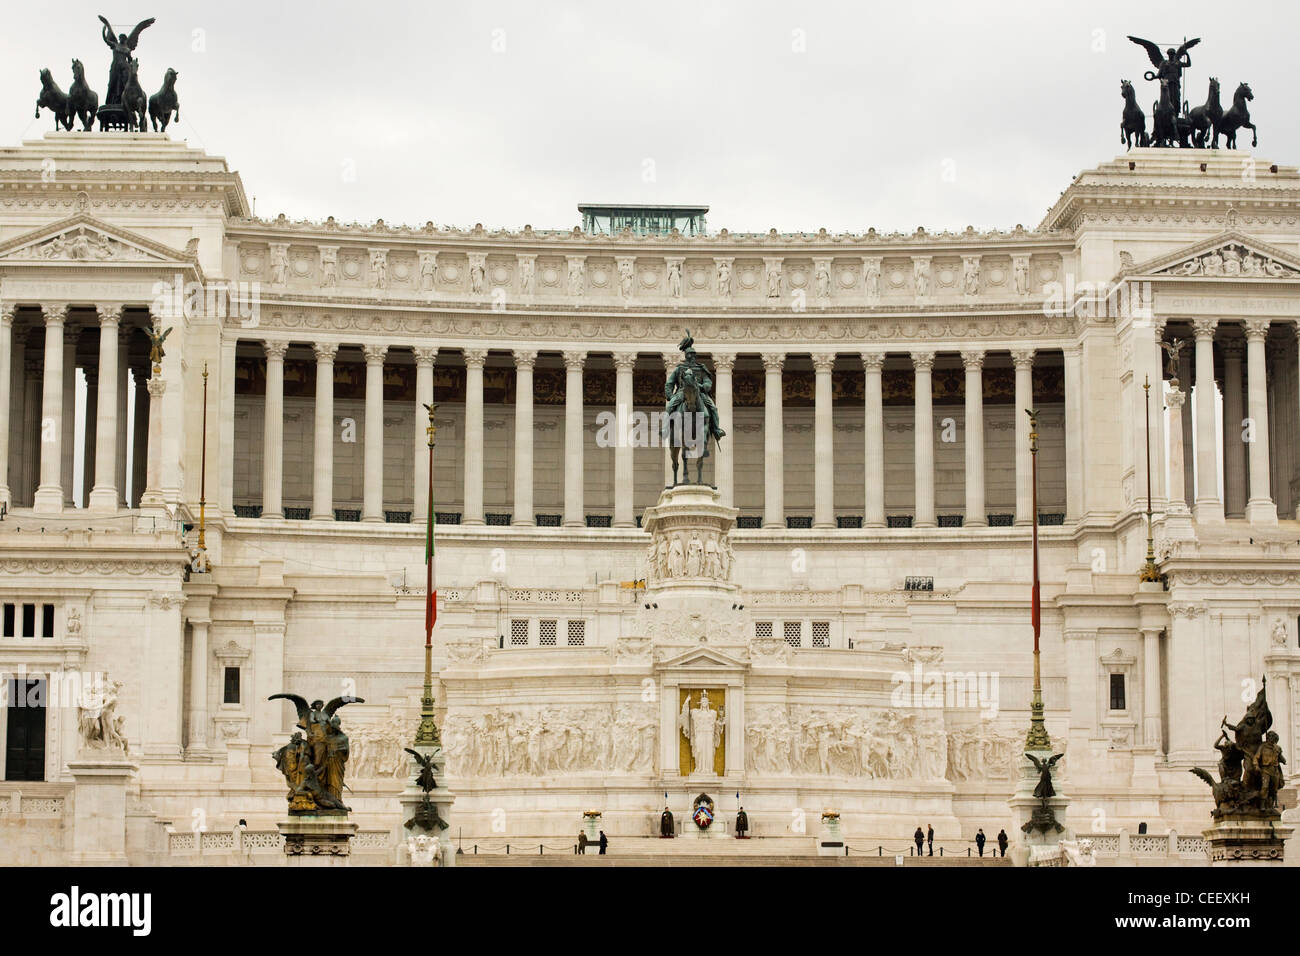 Enorme monumento di marmo bianco omaggio al primo re di un regno Italia Vittorio Emanuele II Roma Italia Foto Stock